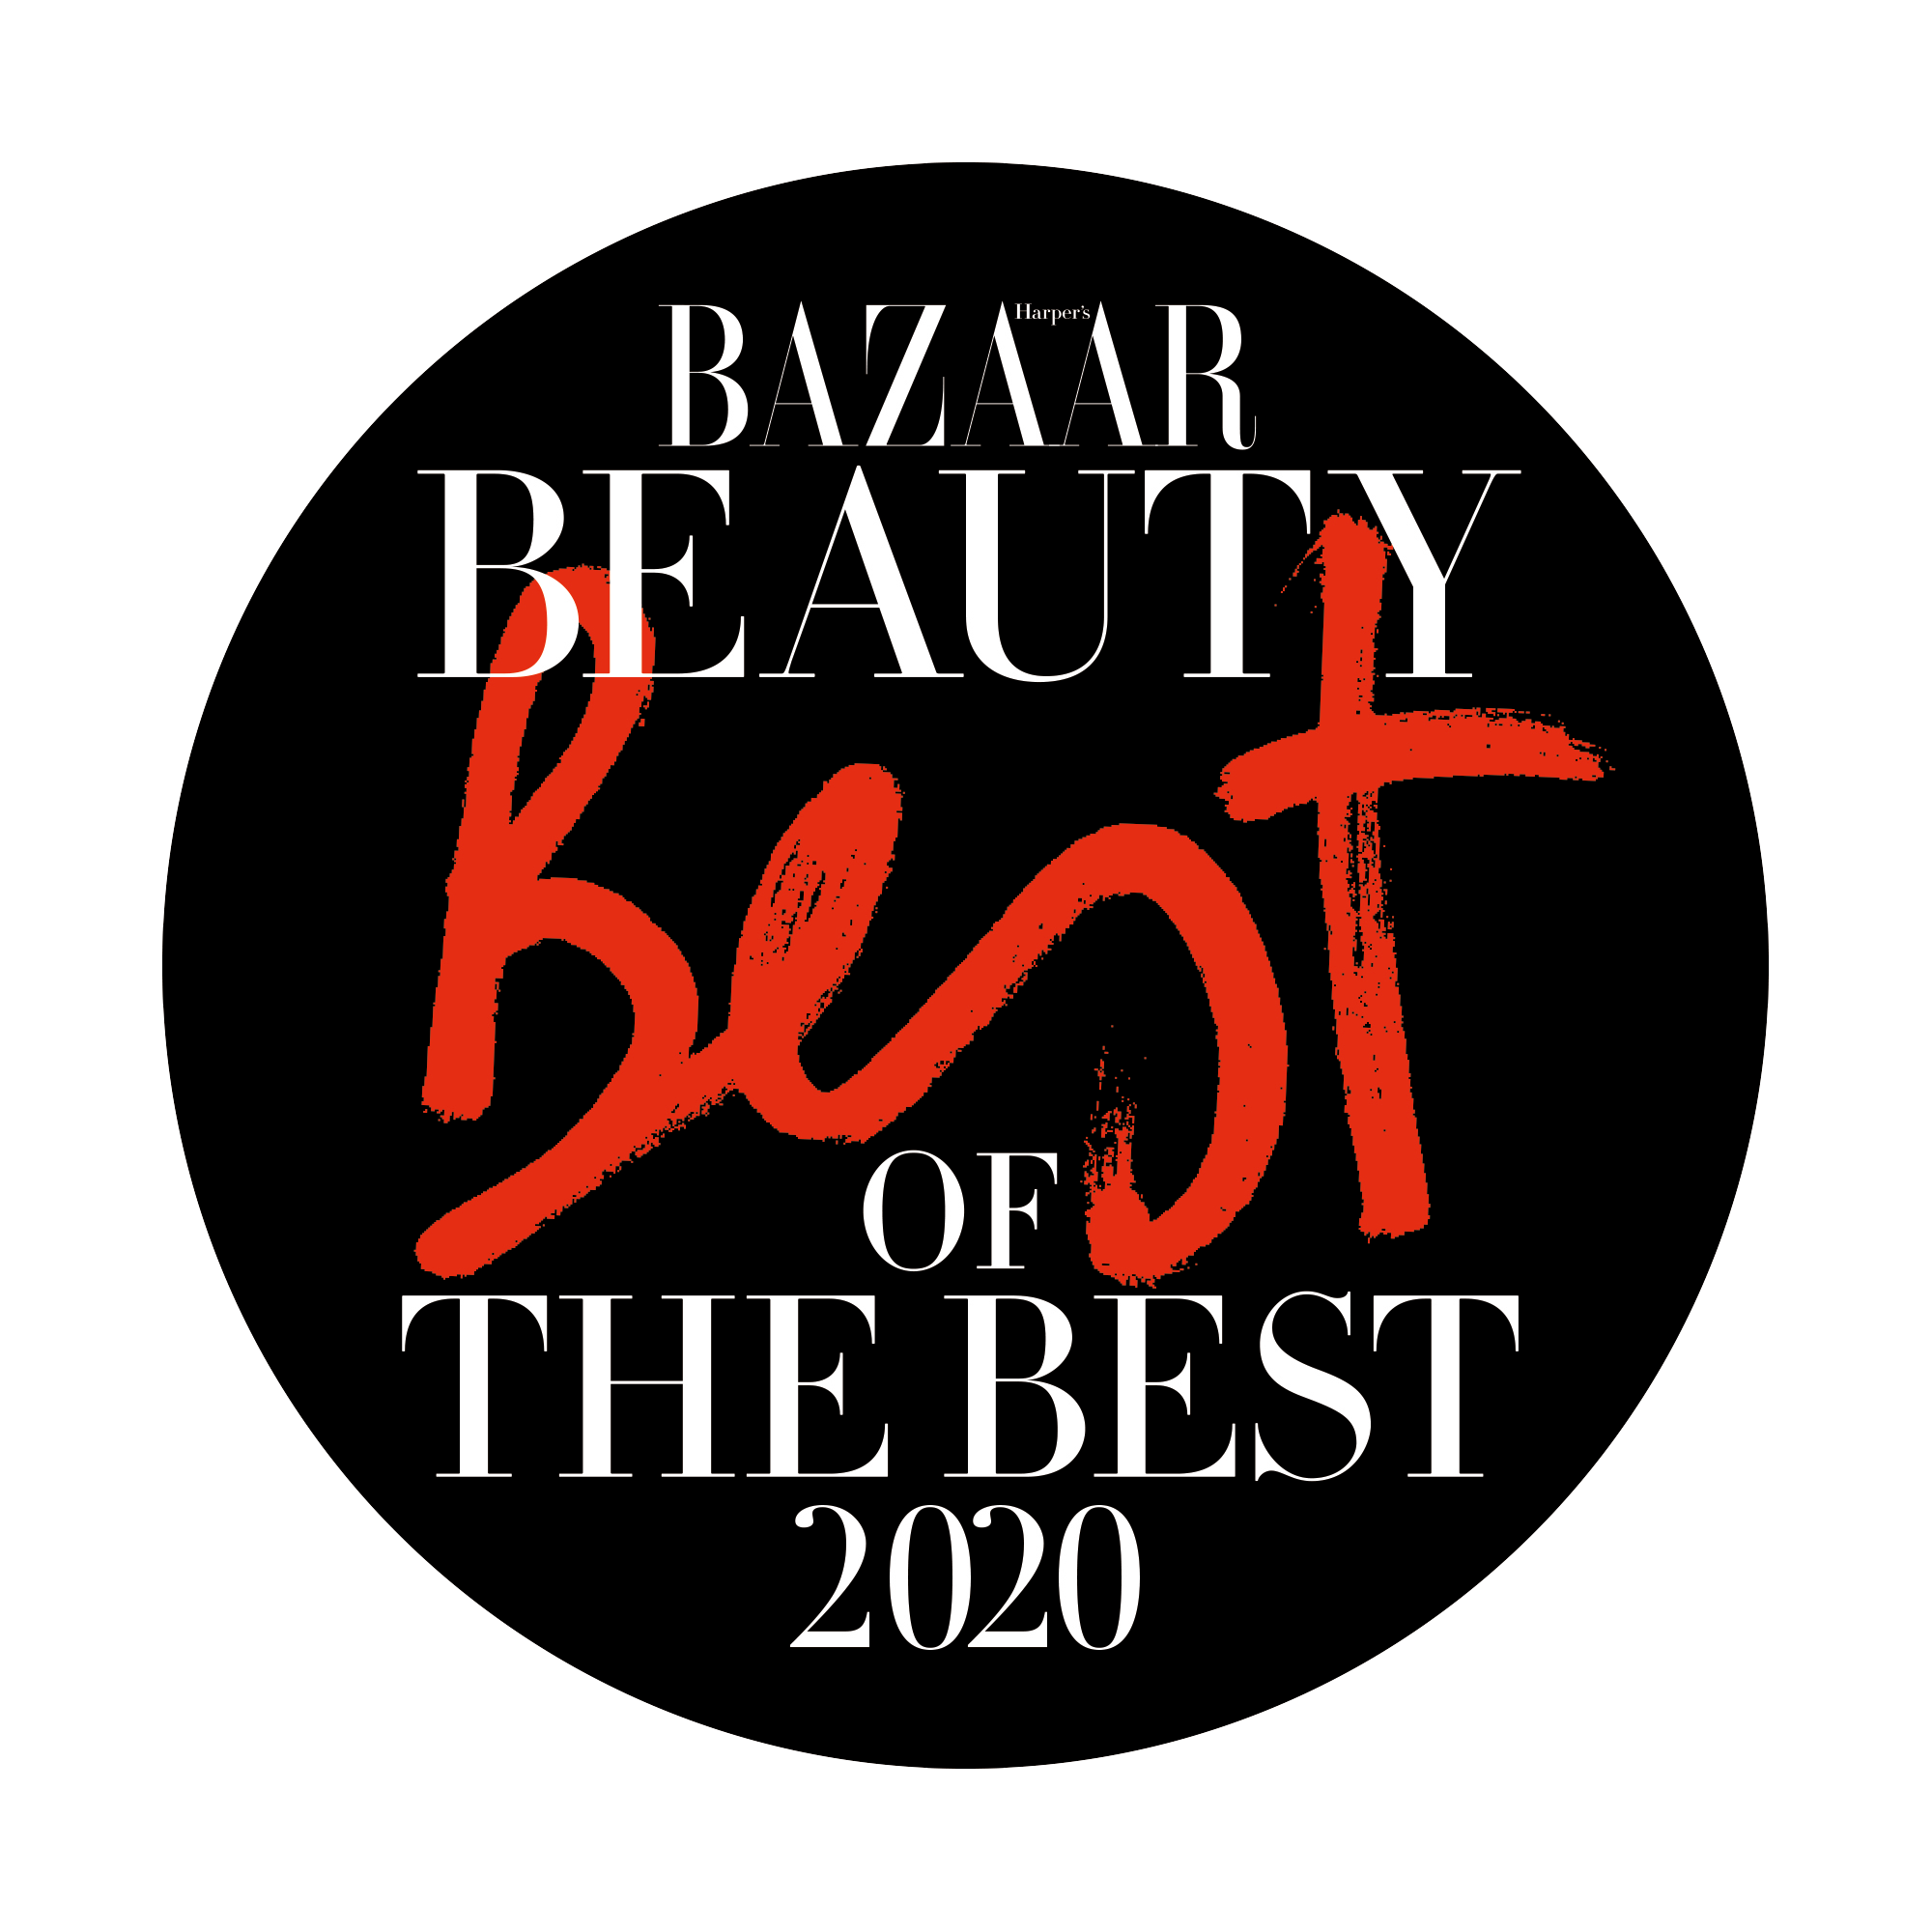 Harper’s Bazaar Best of the Best Beauty award 2020